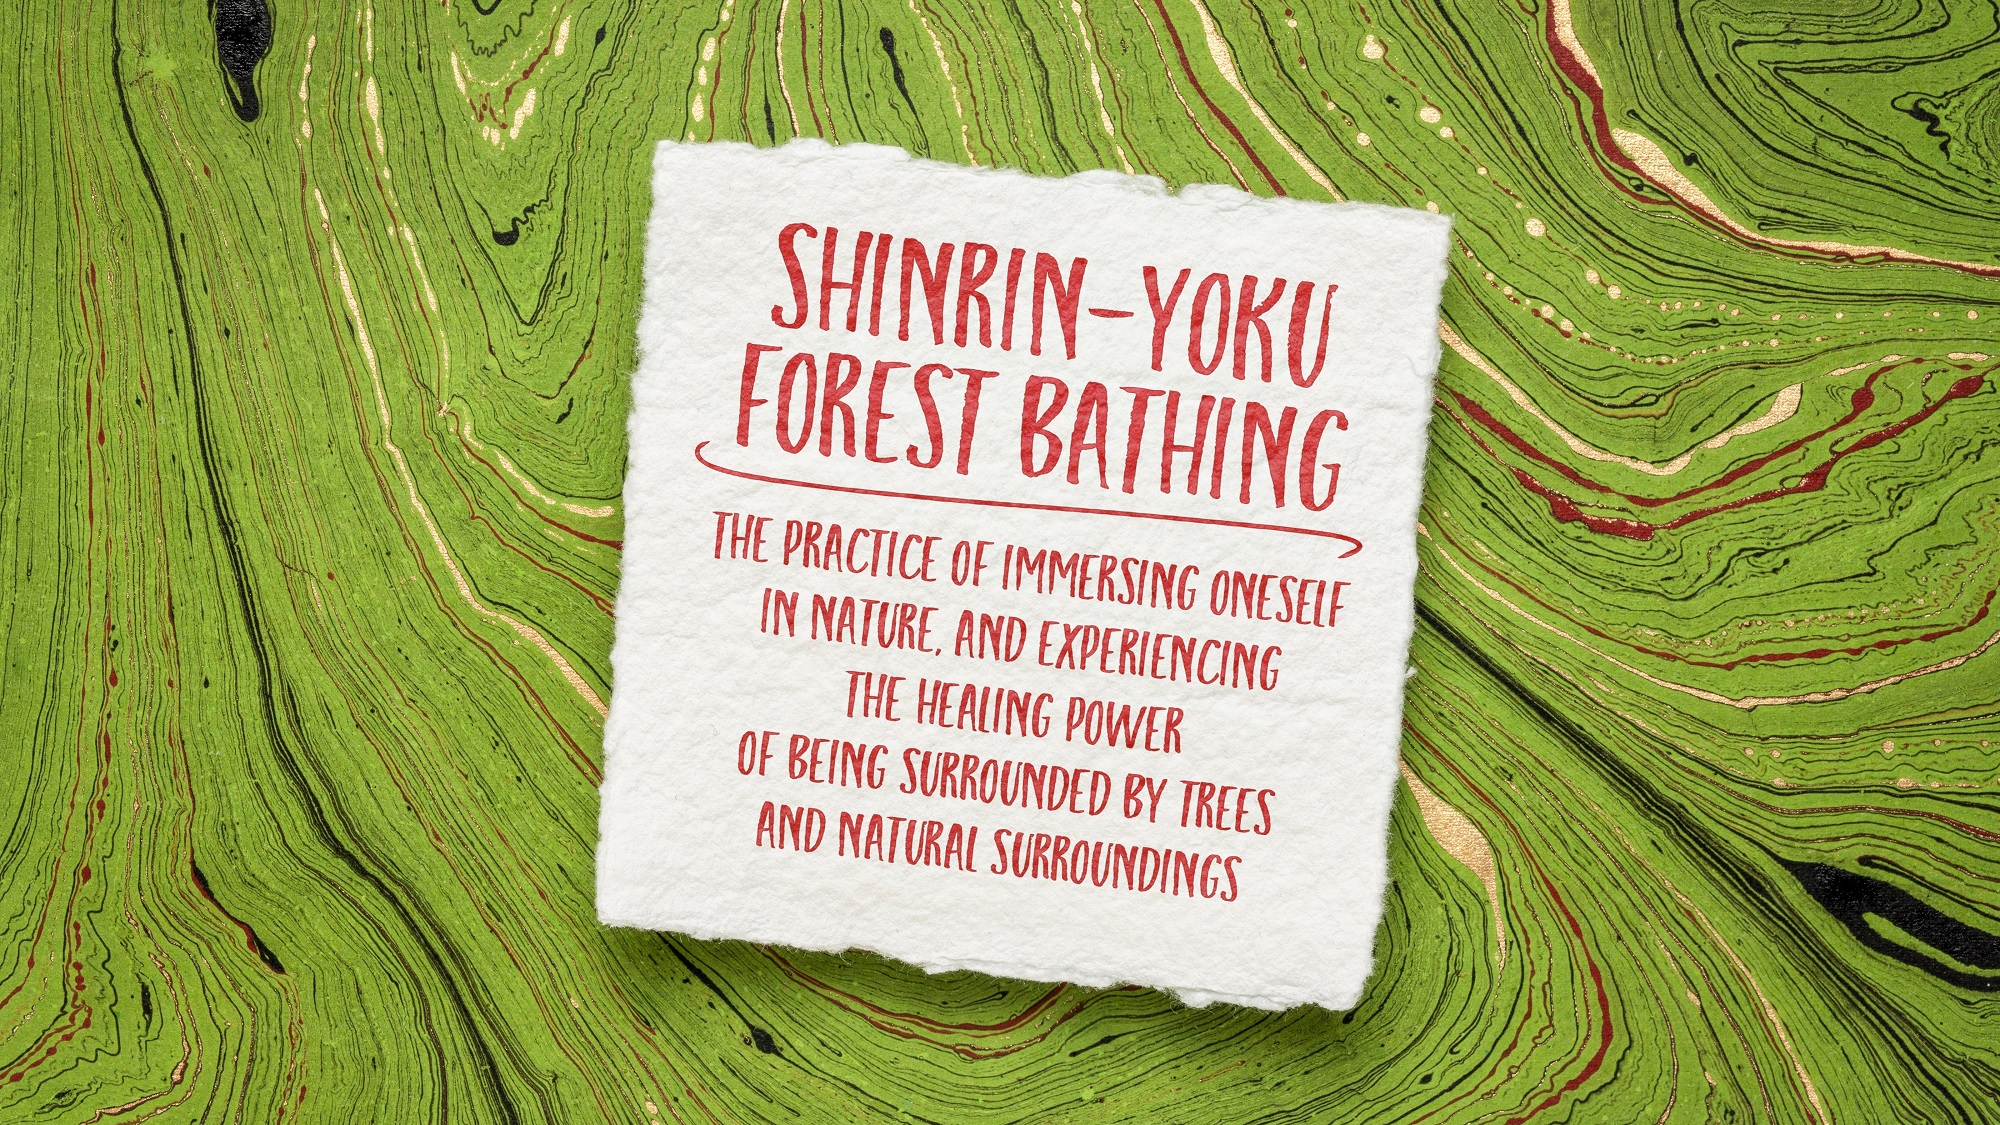 Shinrin-Yoku definition.